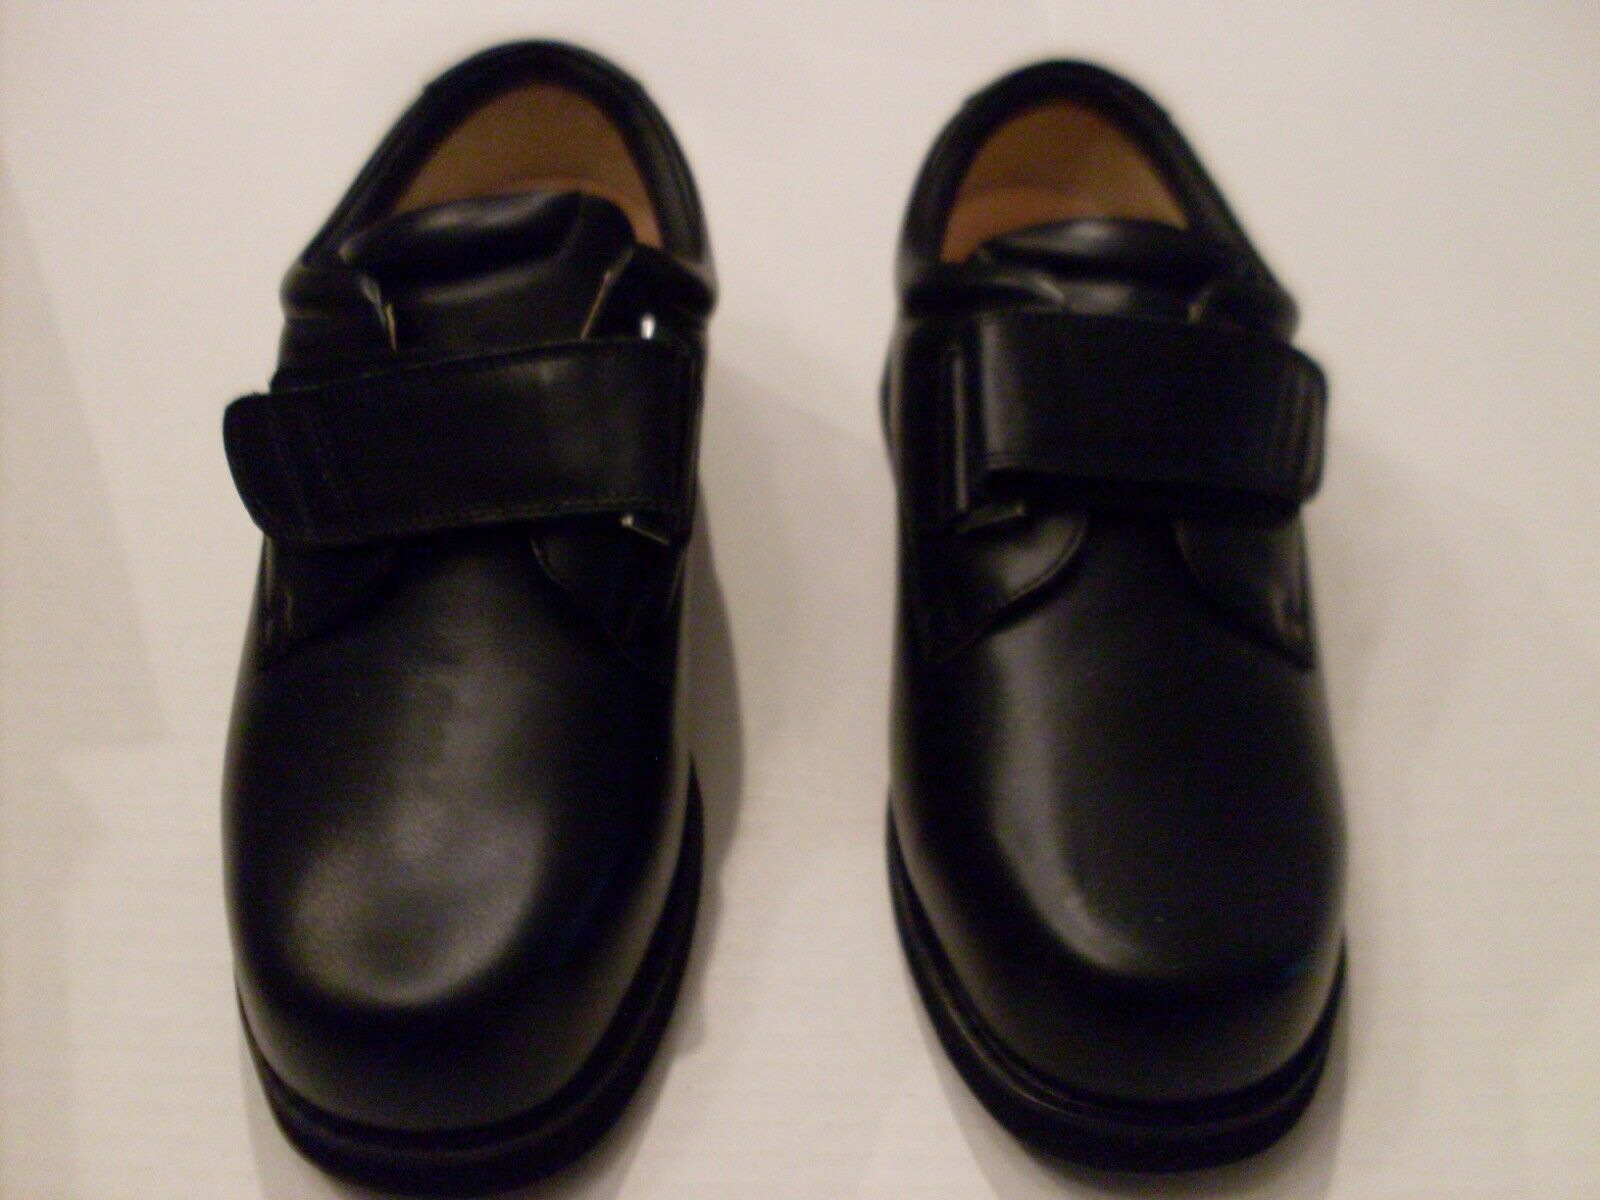 Mt. Emey 502 Therapeutic Shoes size 11-6E XX-Wide Black Strap Closure New In Box